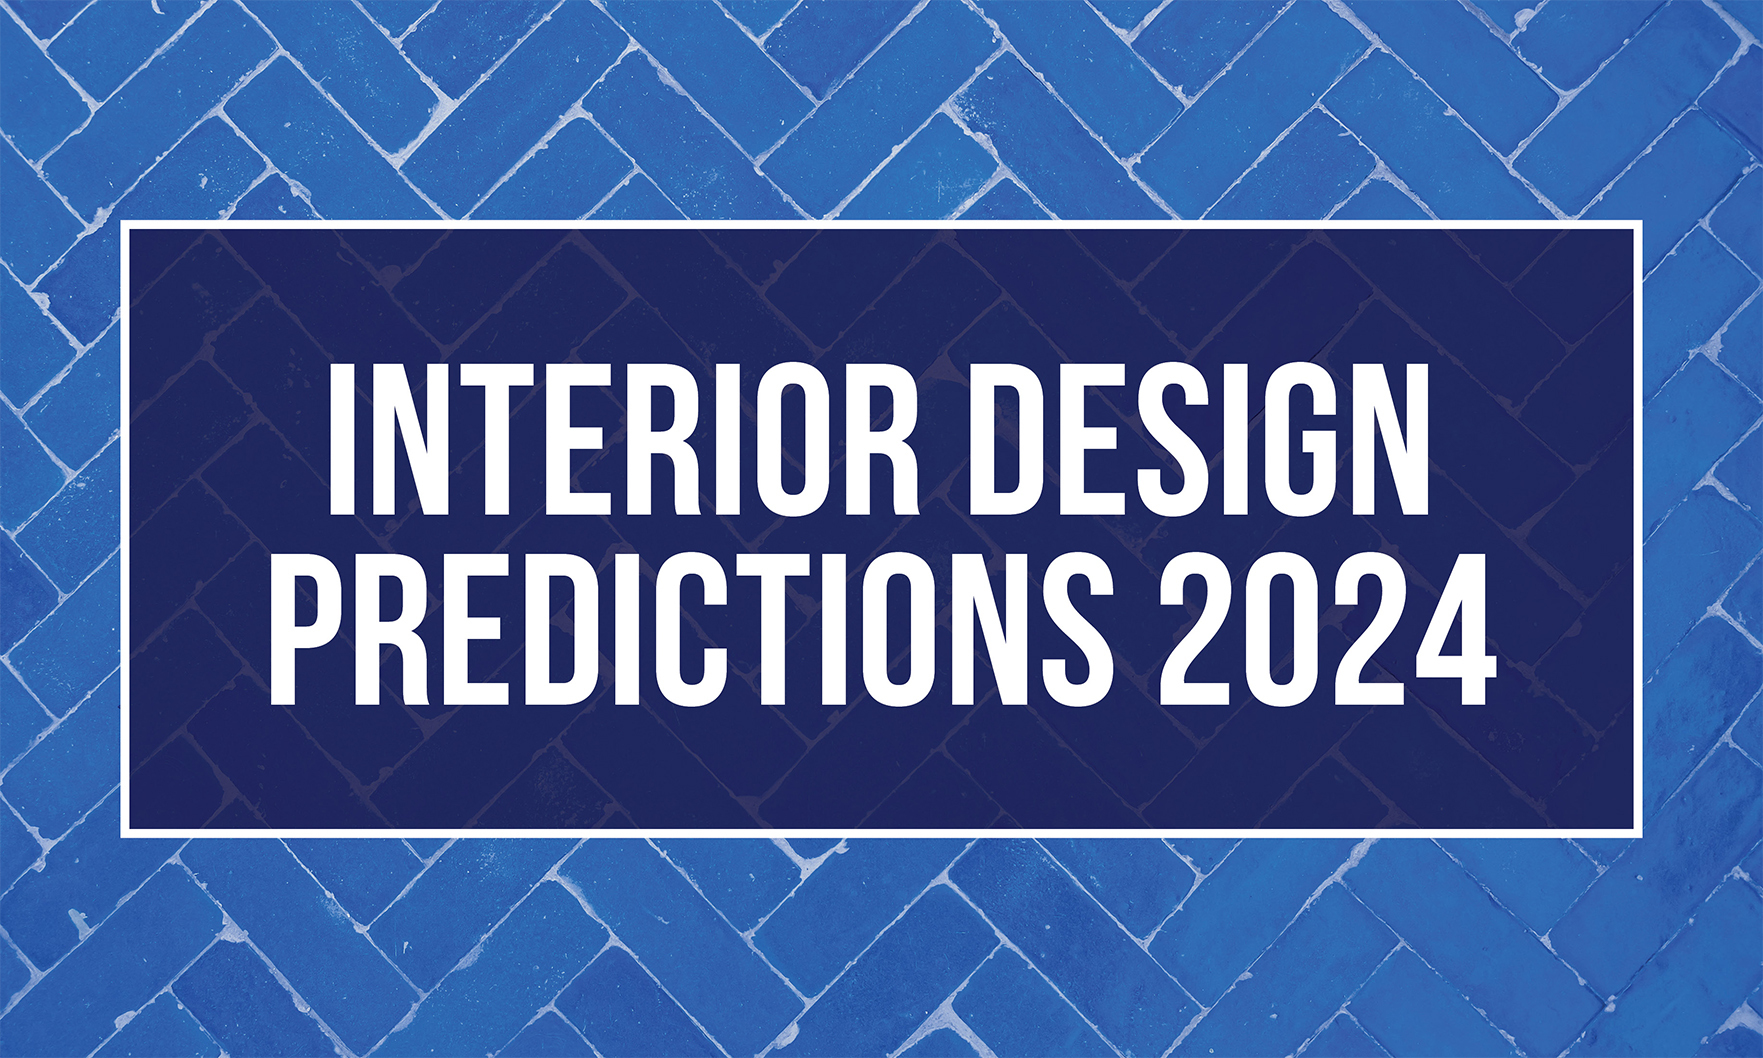 Interior Design Predictions 2024 